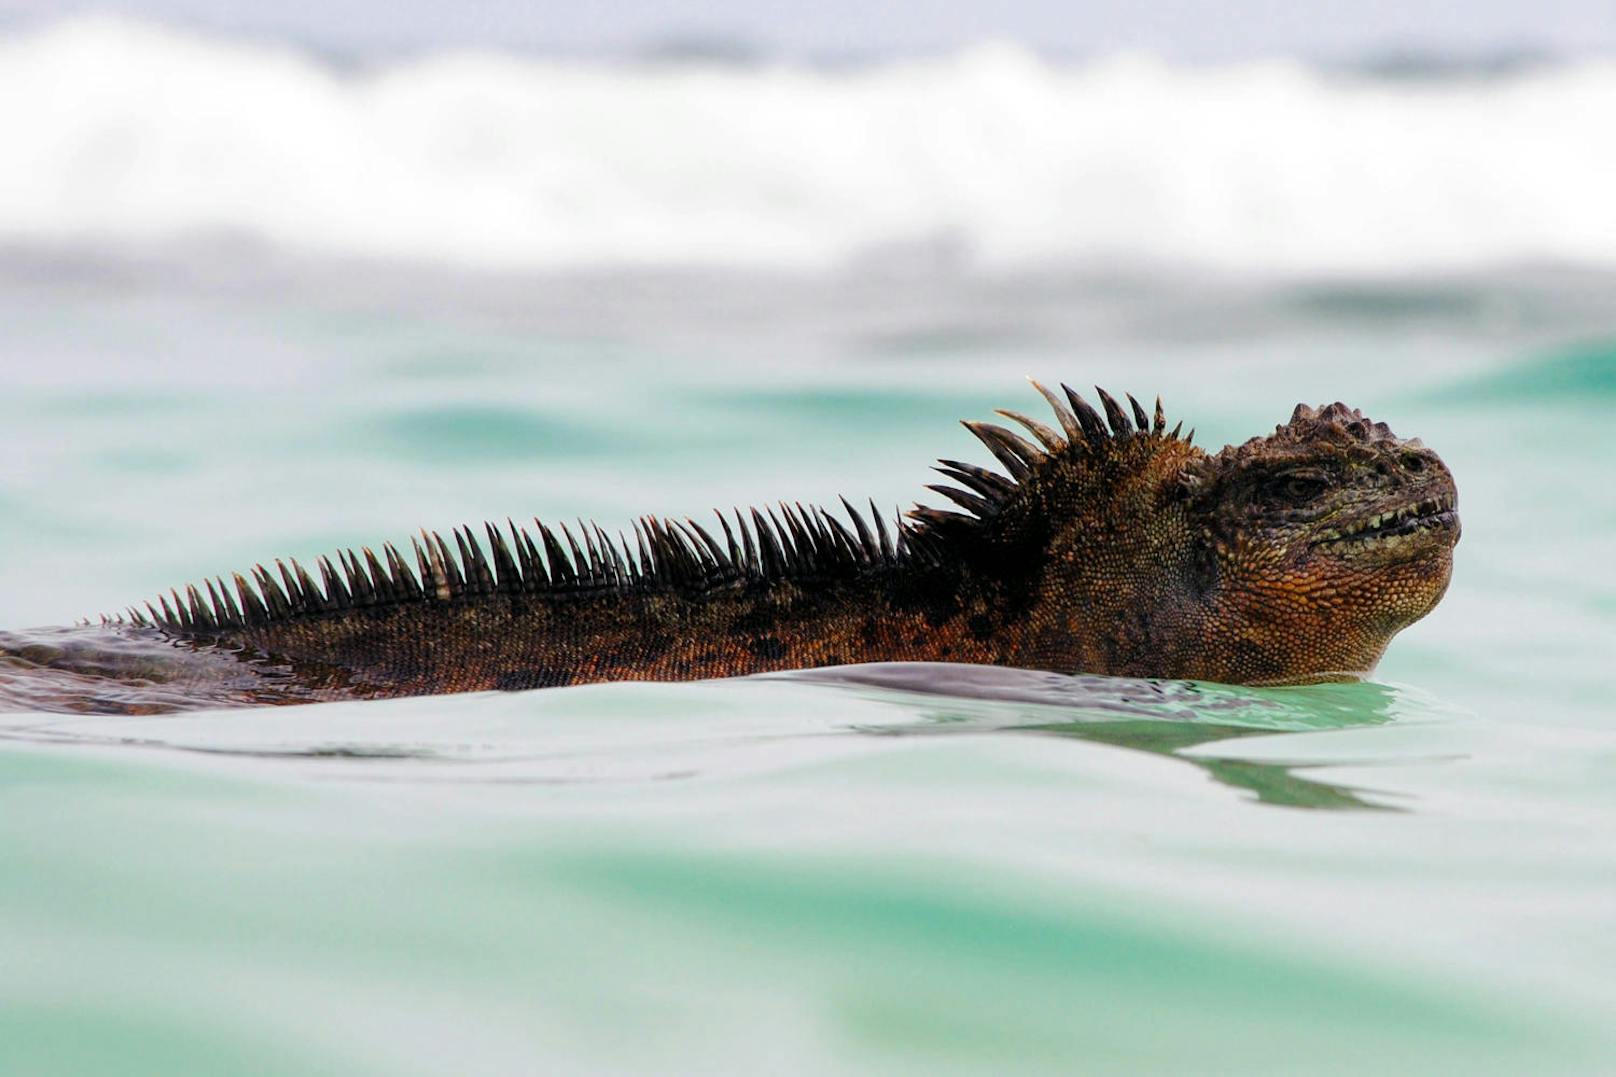 Biologen um Sebastian Steinfartz von der TU Braunschweig haben die Unterart der Galápagos-Meerechse entdeckt und sie nach dem Kino-Monster Godzilla benannt.